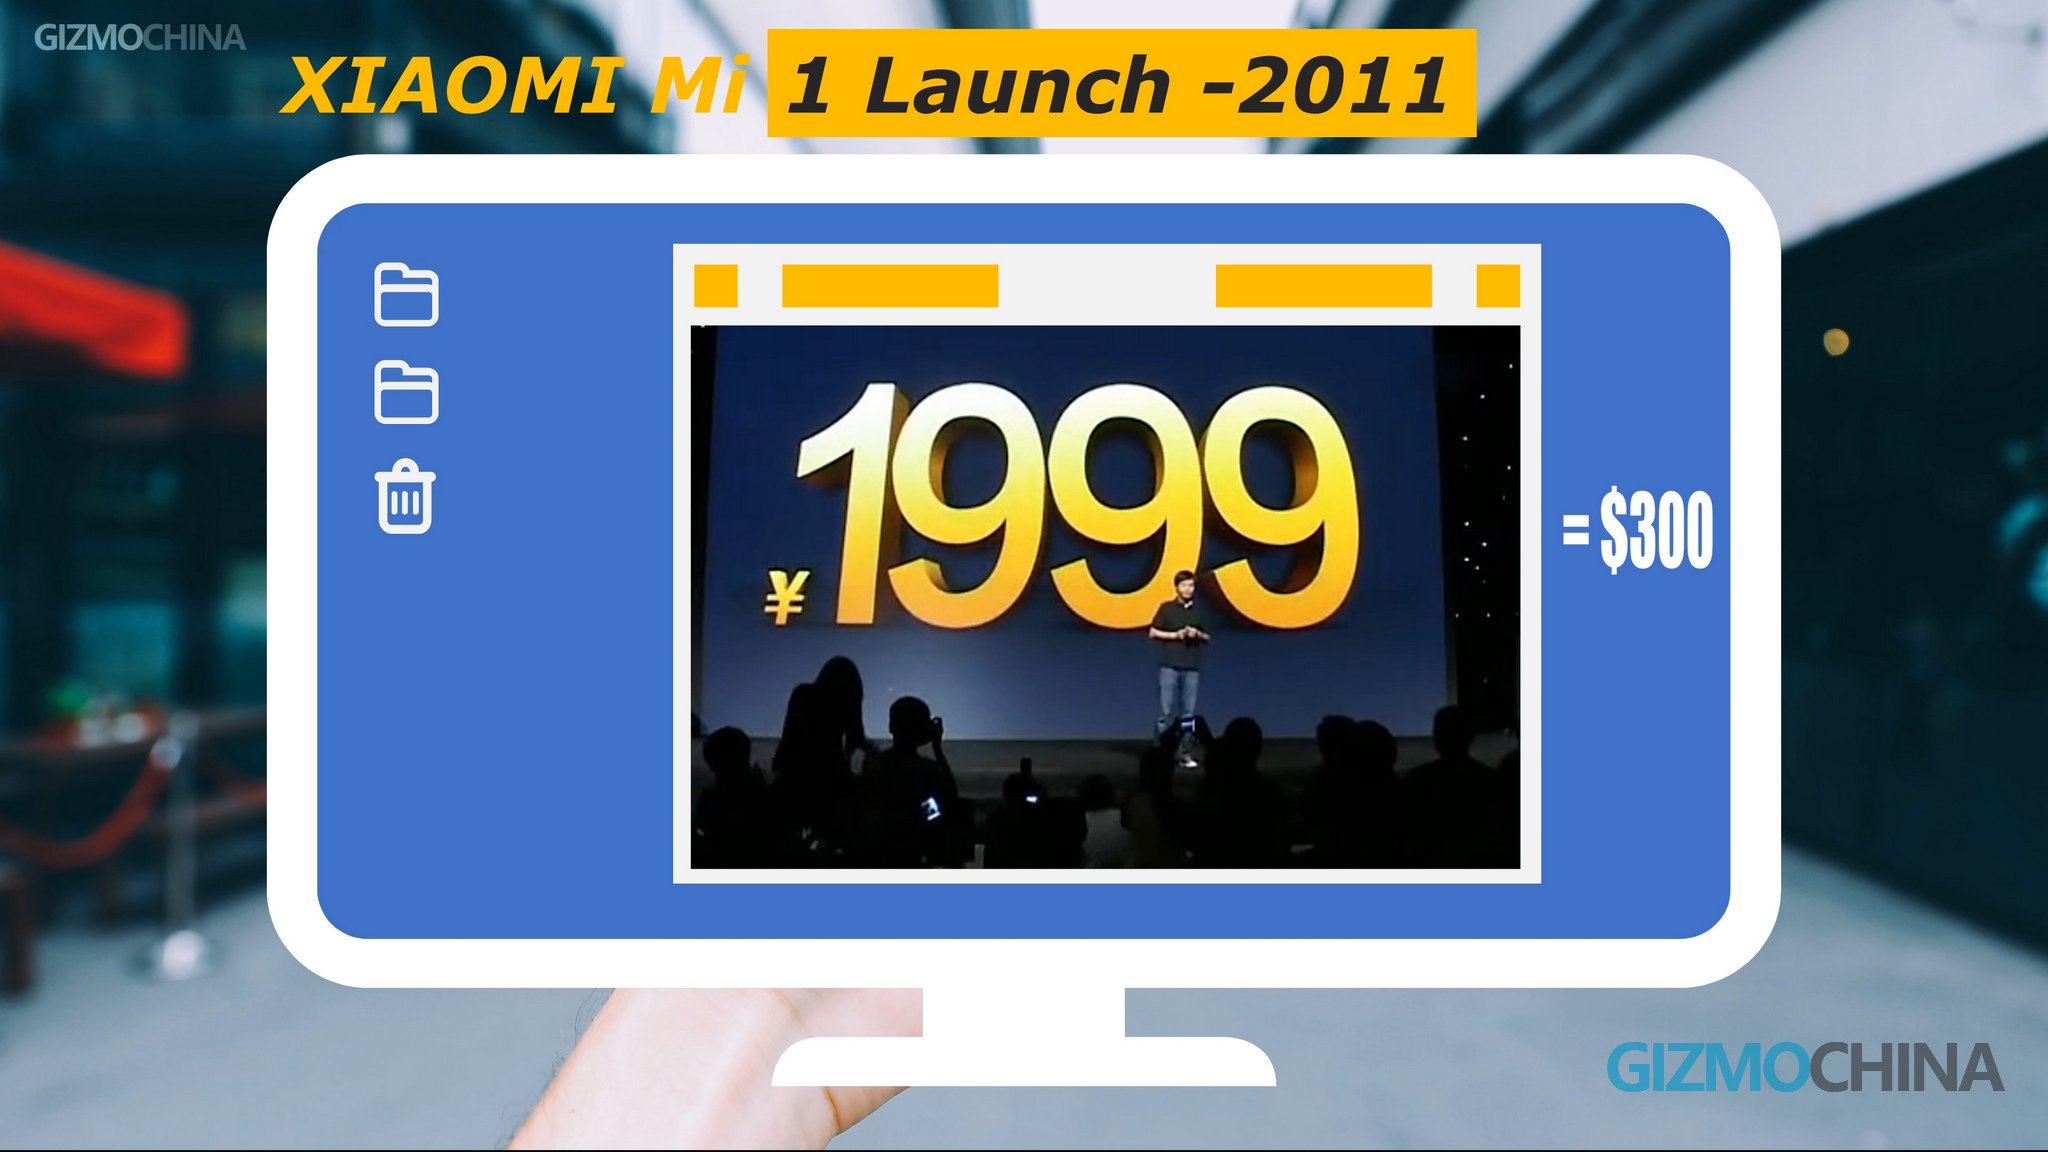 Xiaomi 1999 yuan pricing